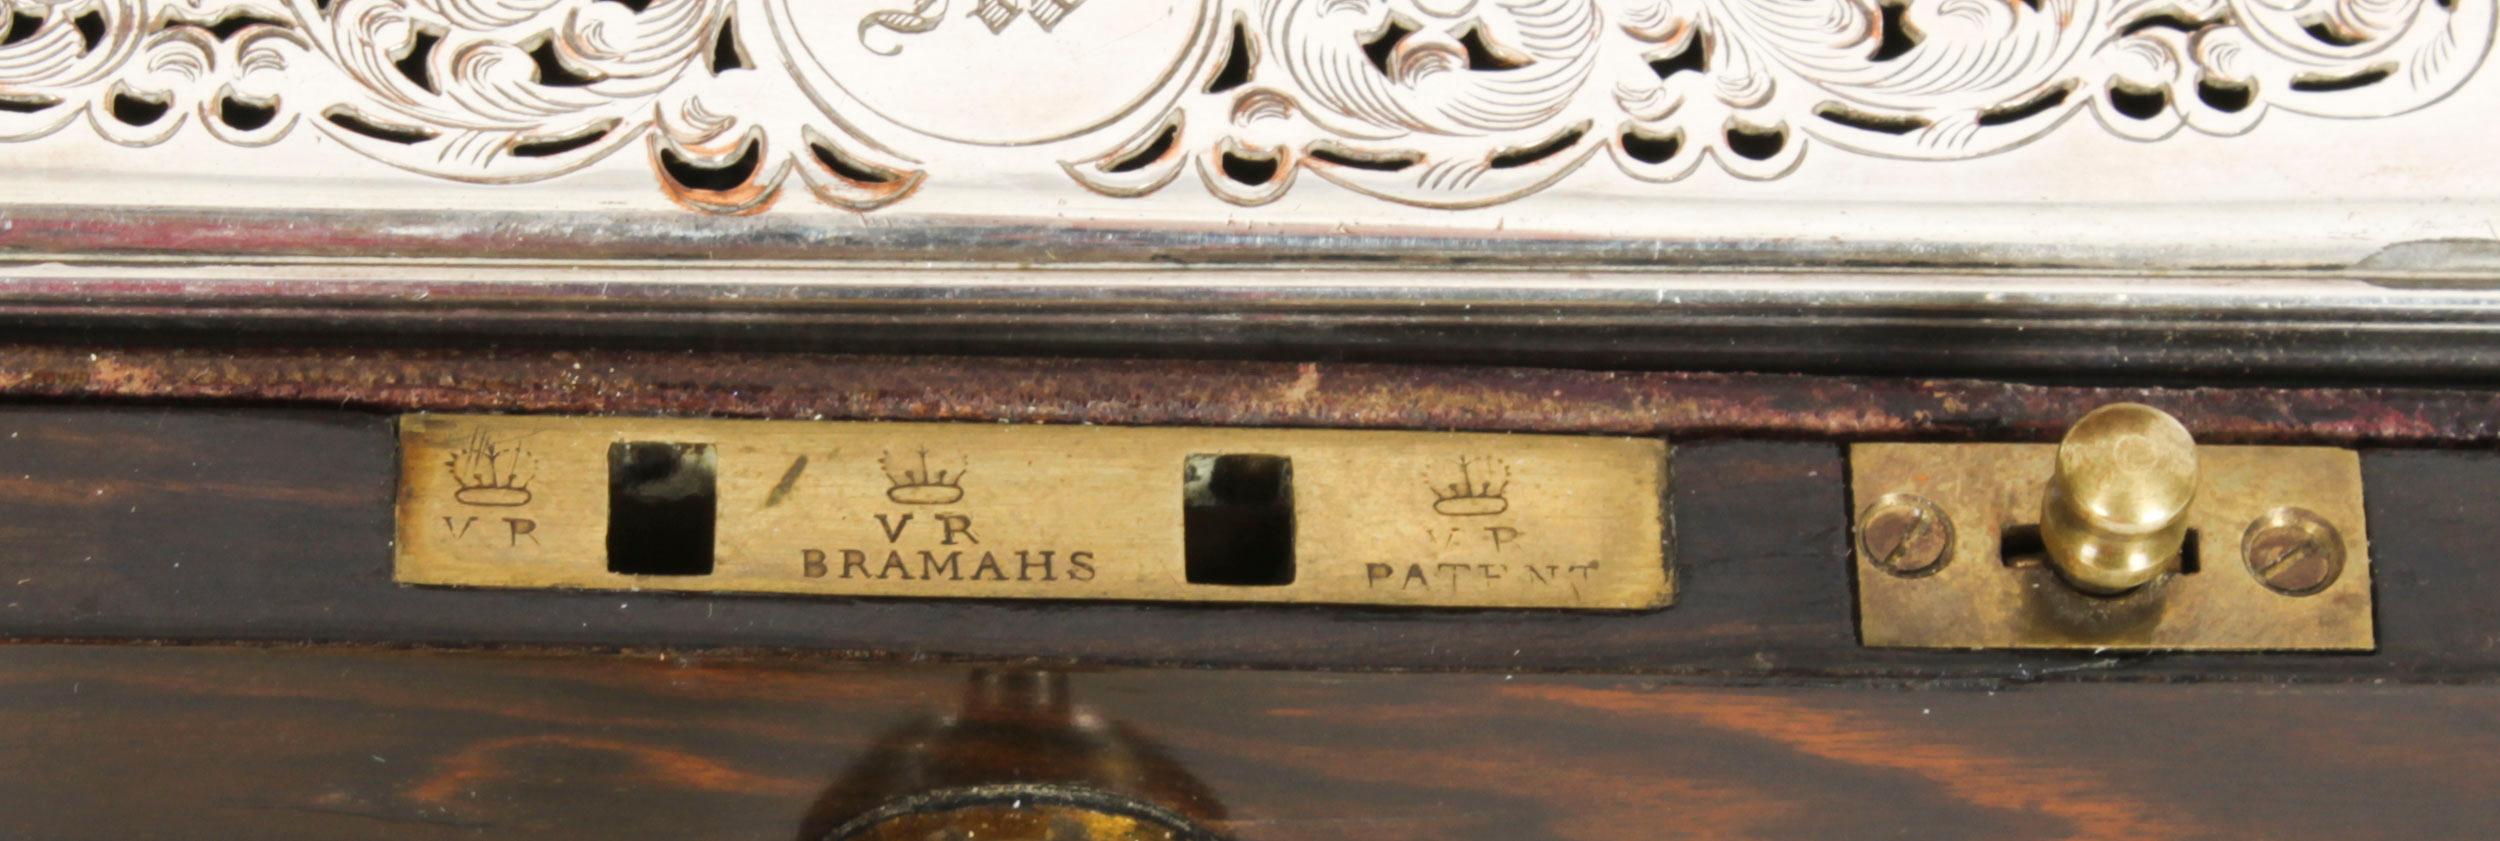 Antique Victorian Coromandel Gentleman's Travelling Vanity Case 19th C For Sale 3